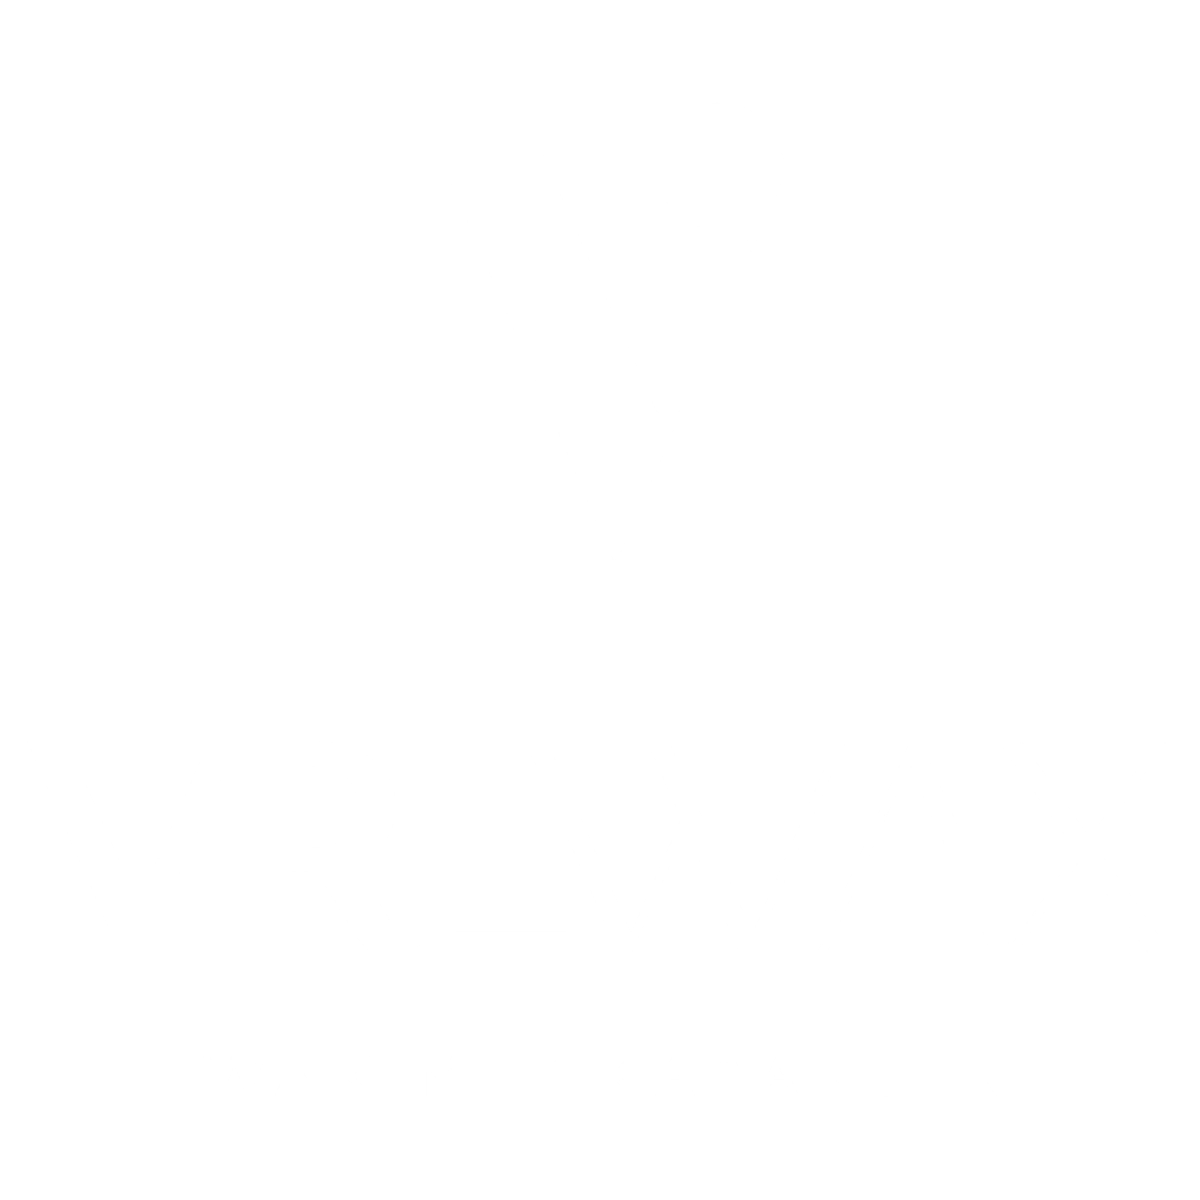 VRLWAXs achtergrond